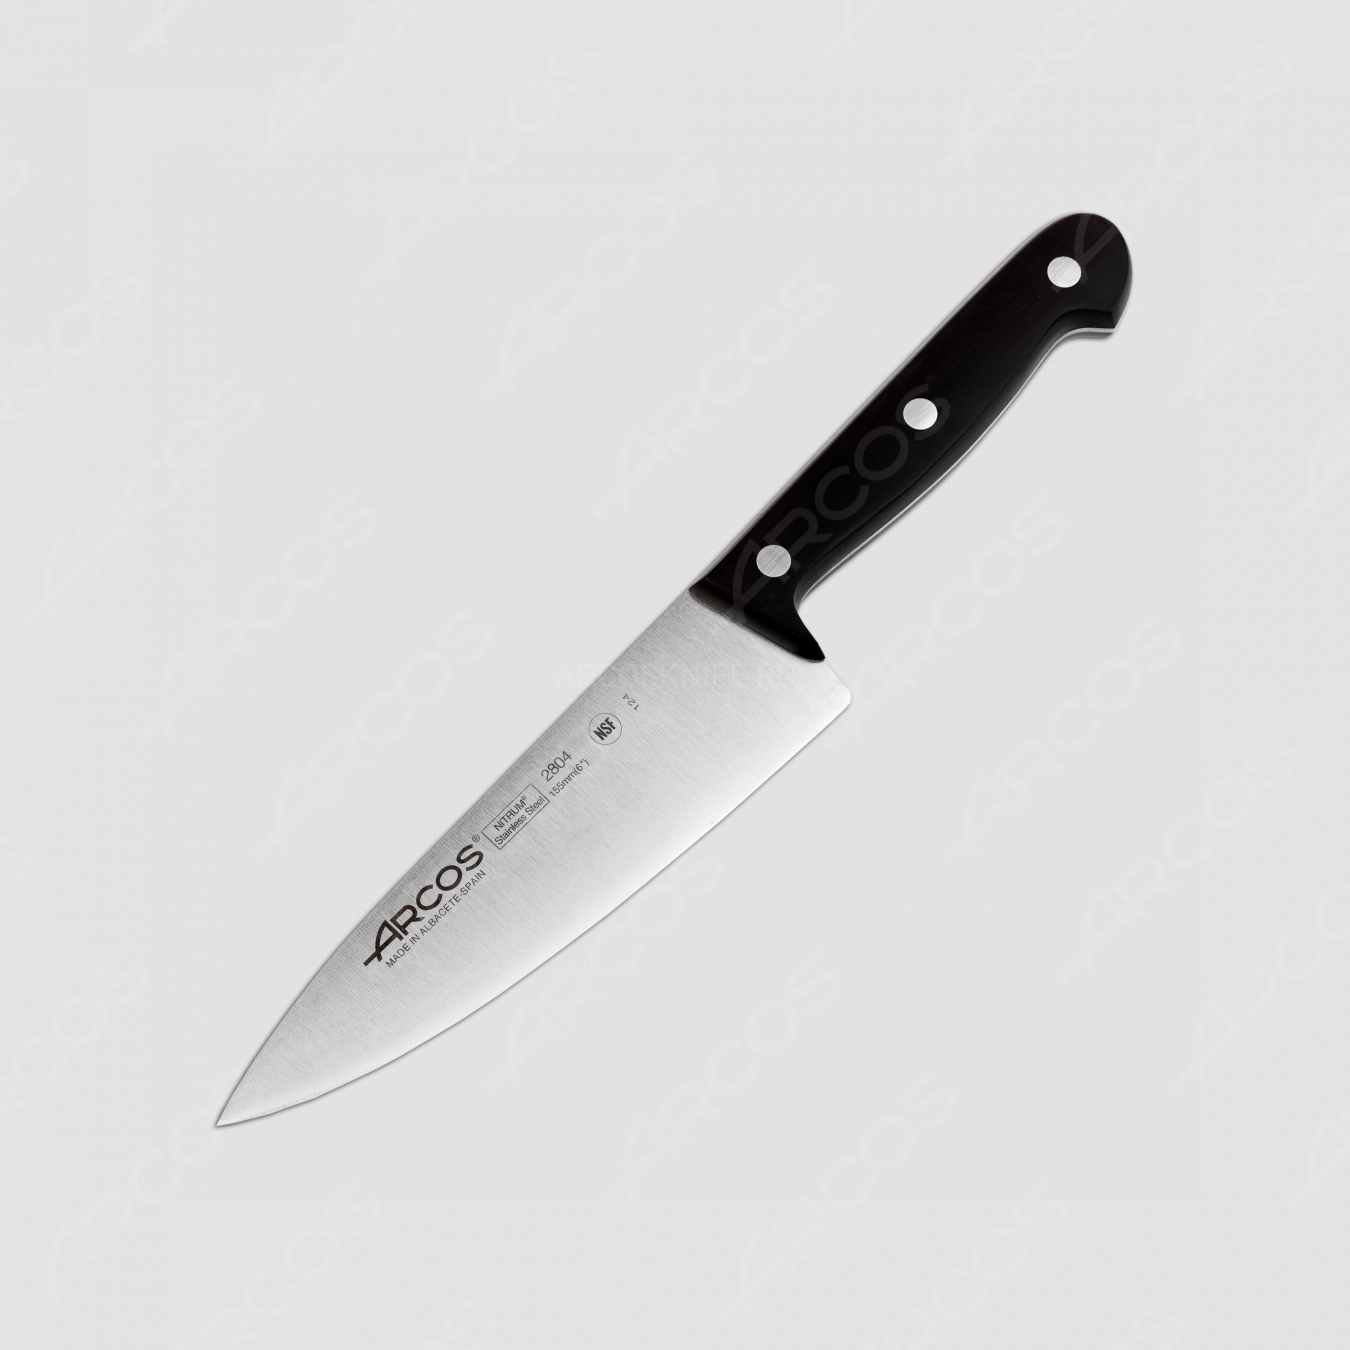 Профессиональный поварской кухонный нож 15,5 см, серия Universal, ARCOS, Испания